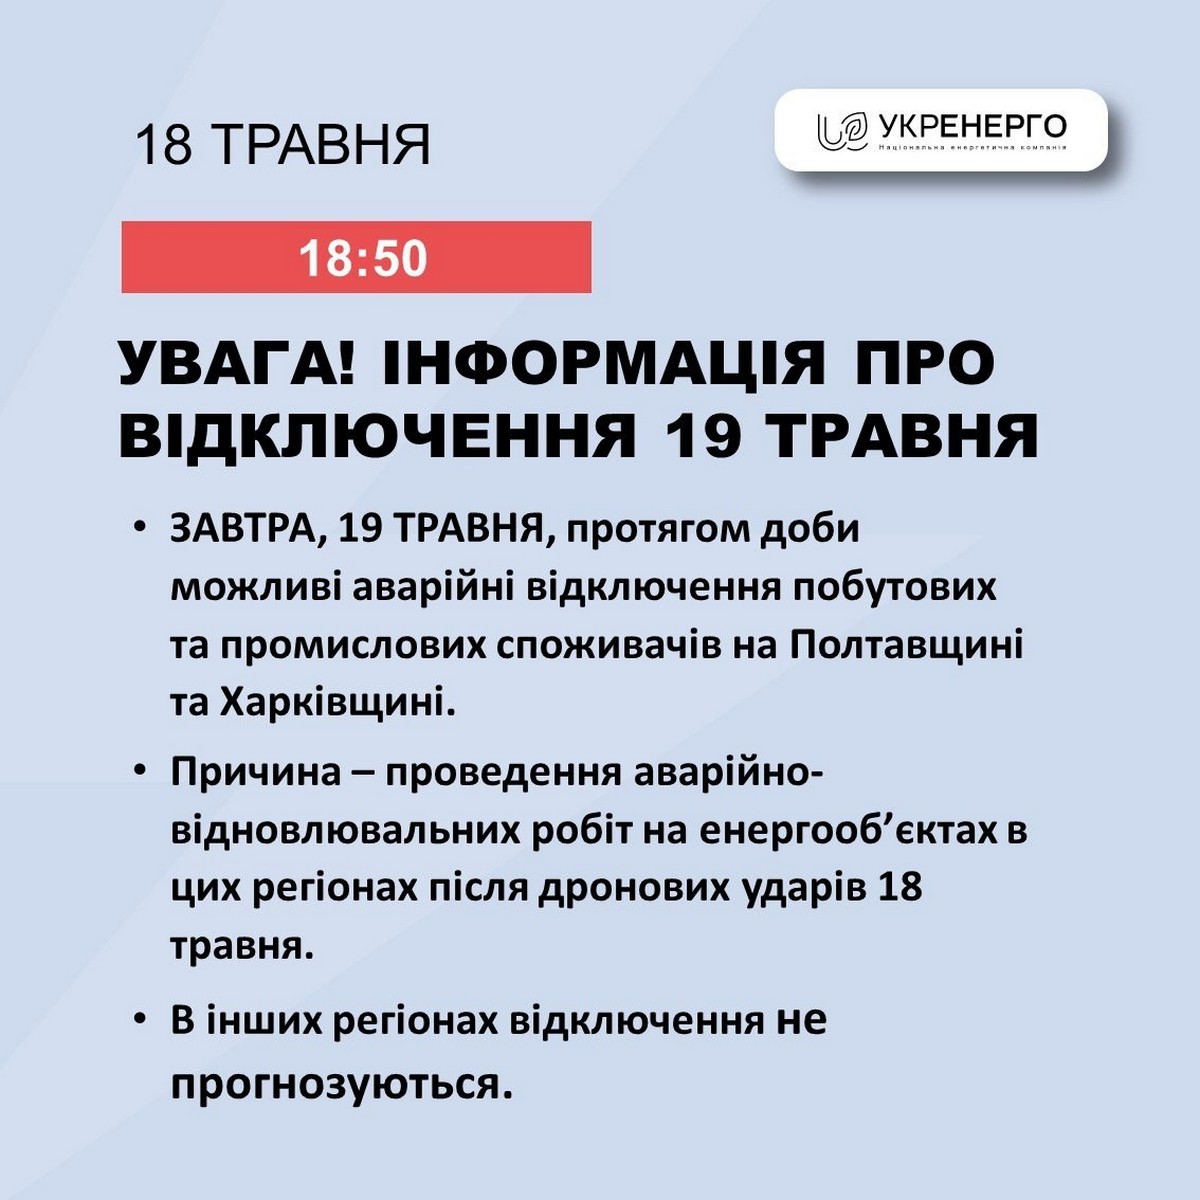 Аварійні відключення світла 19 травня можливі у двох областях України - Укренерго